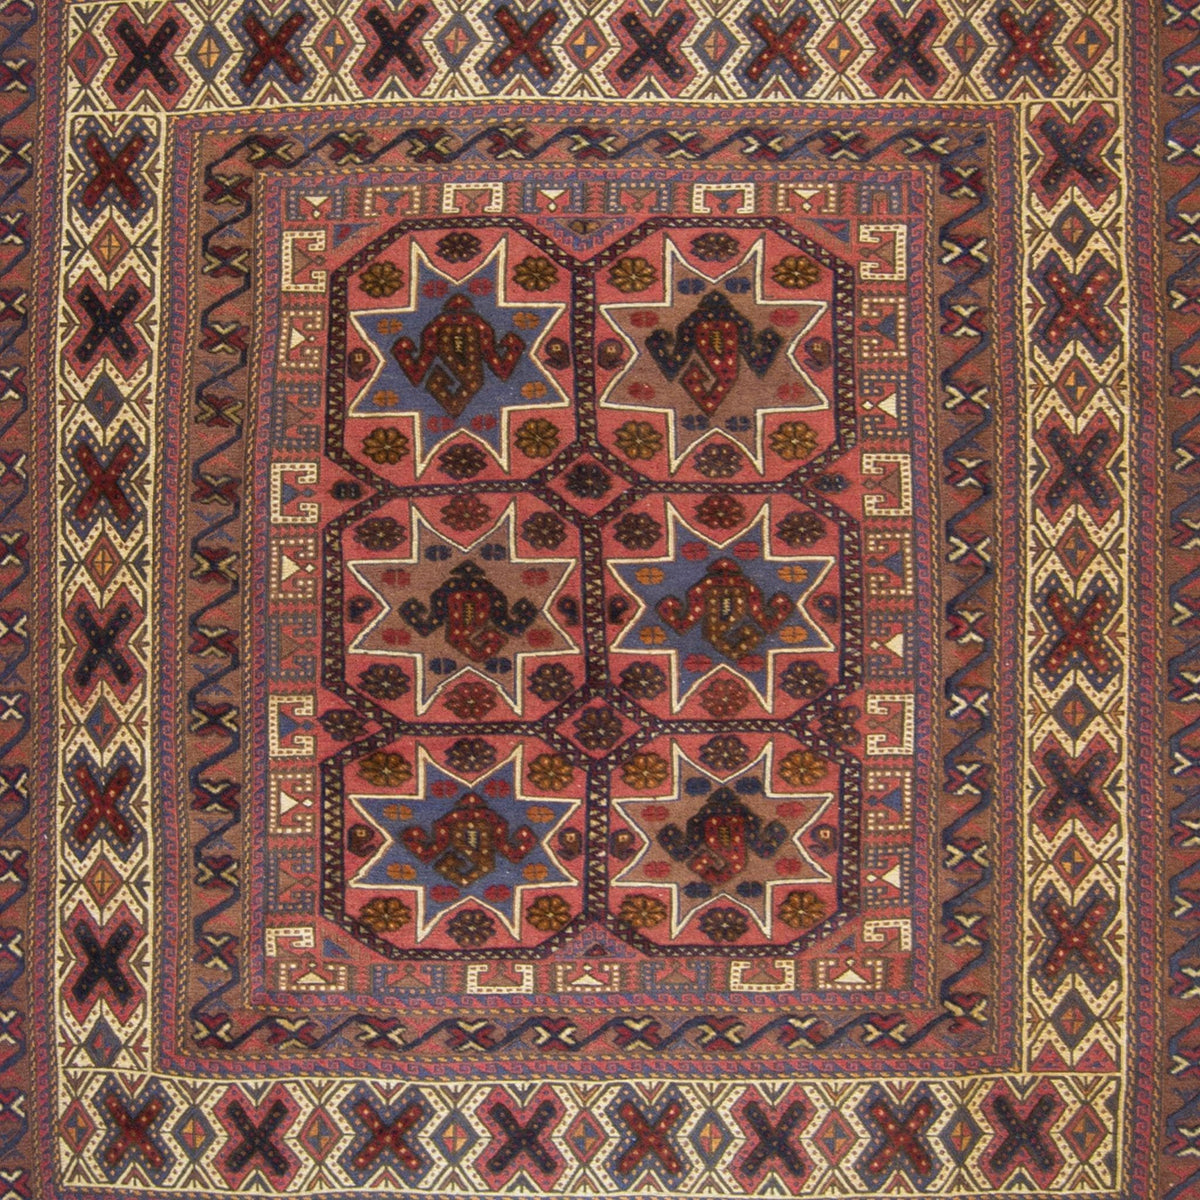 Super Fine Persian Kilim- Sumak Rug 181cm x 262cm